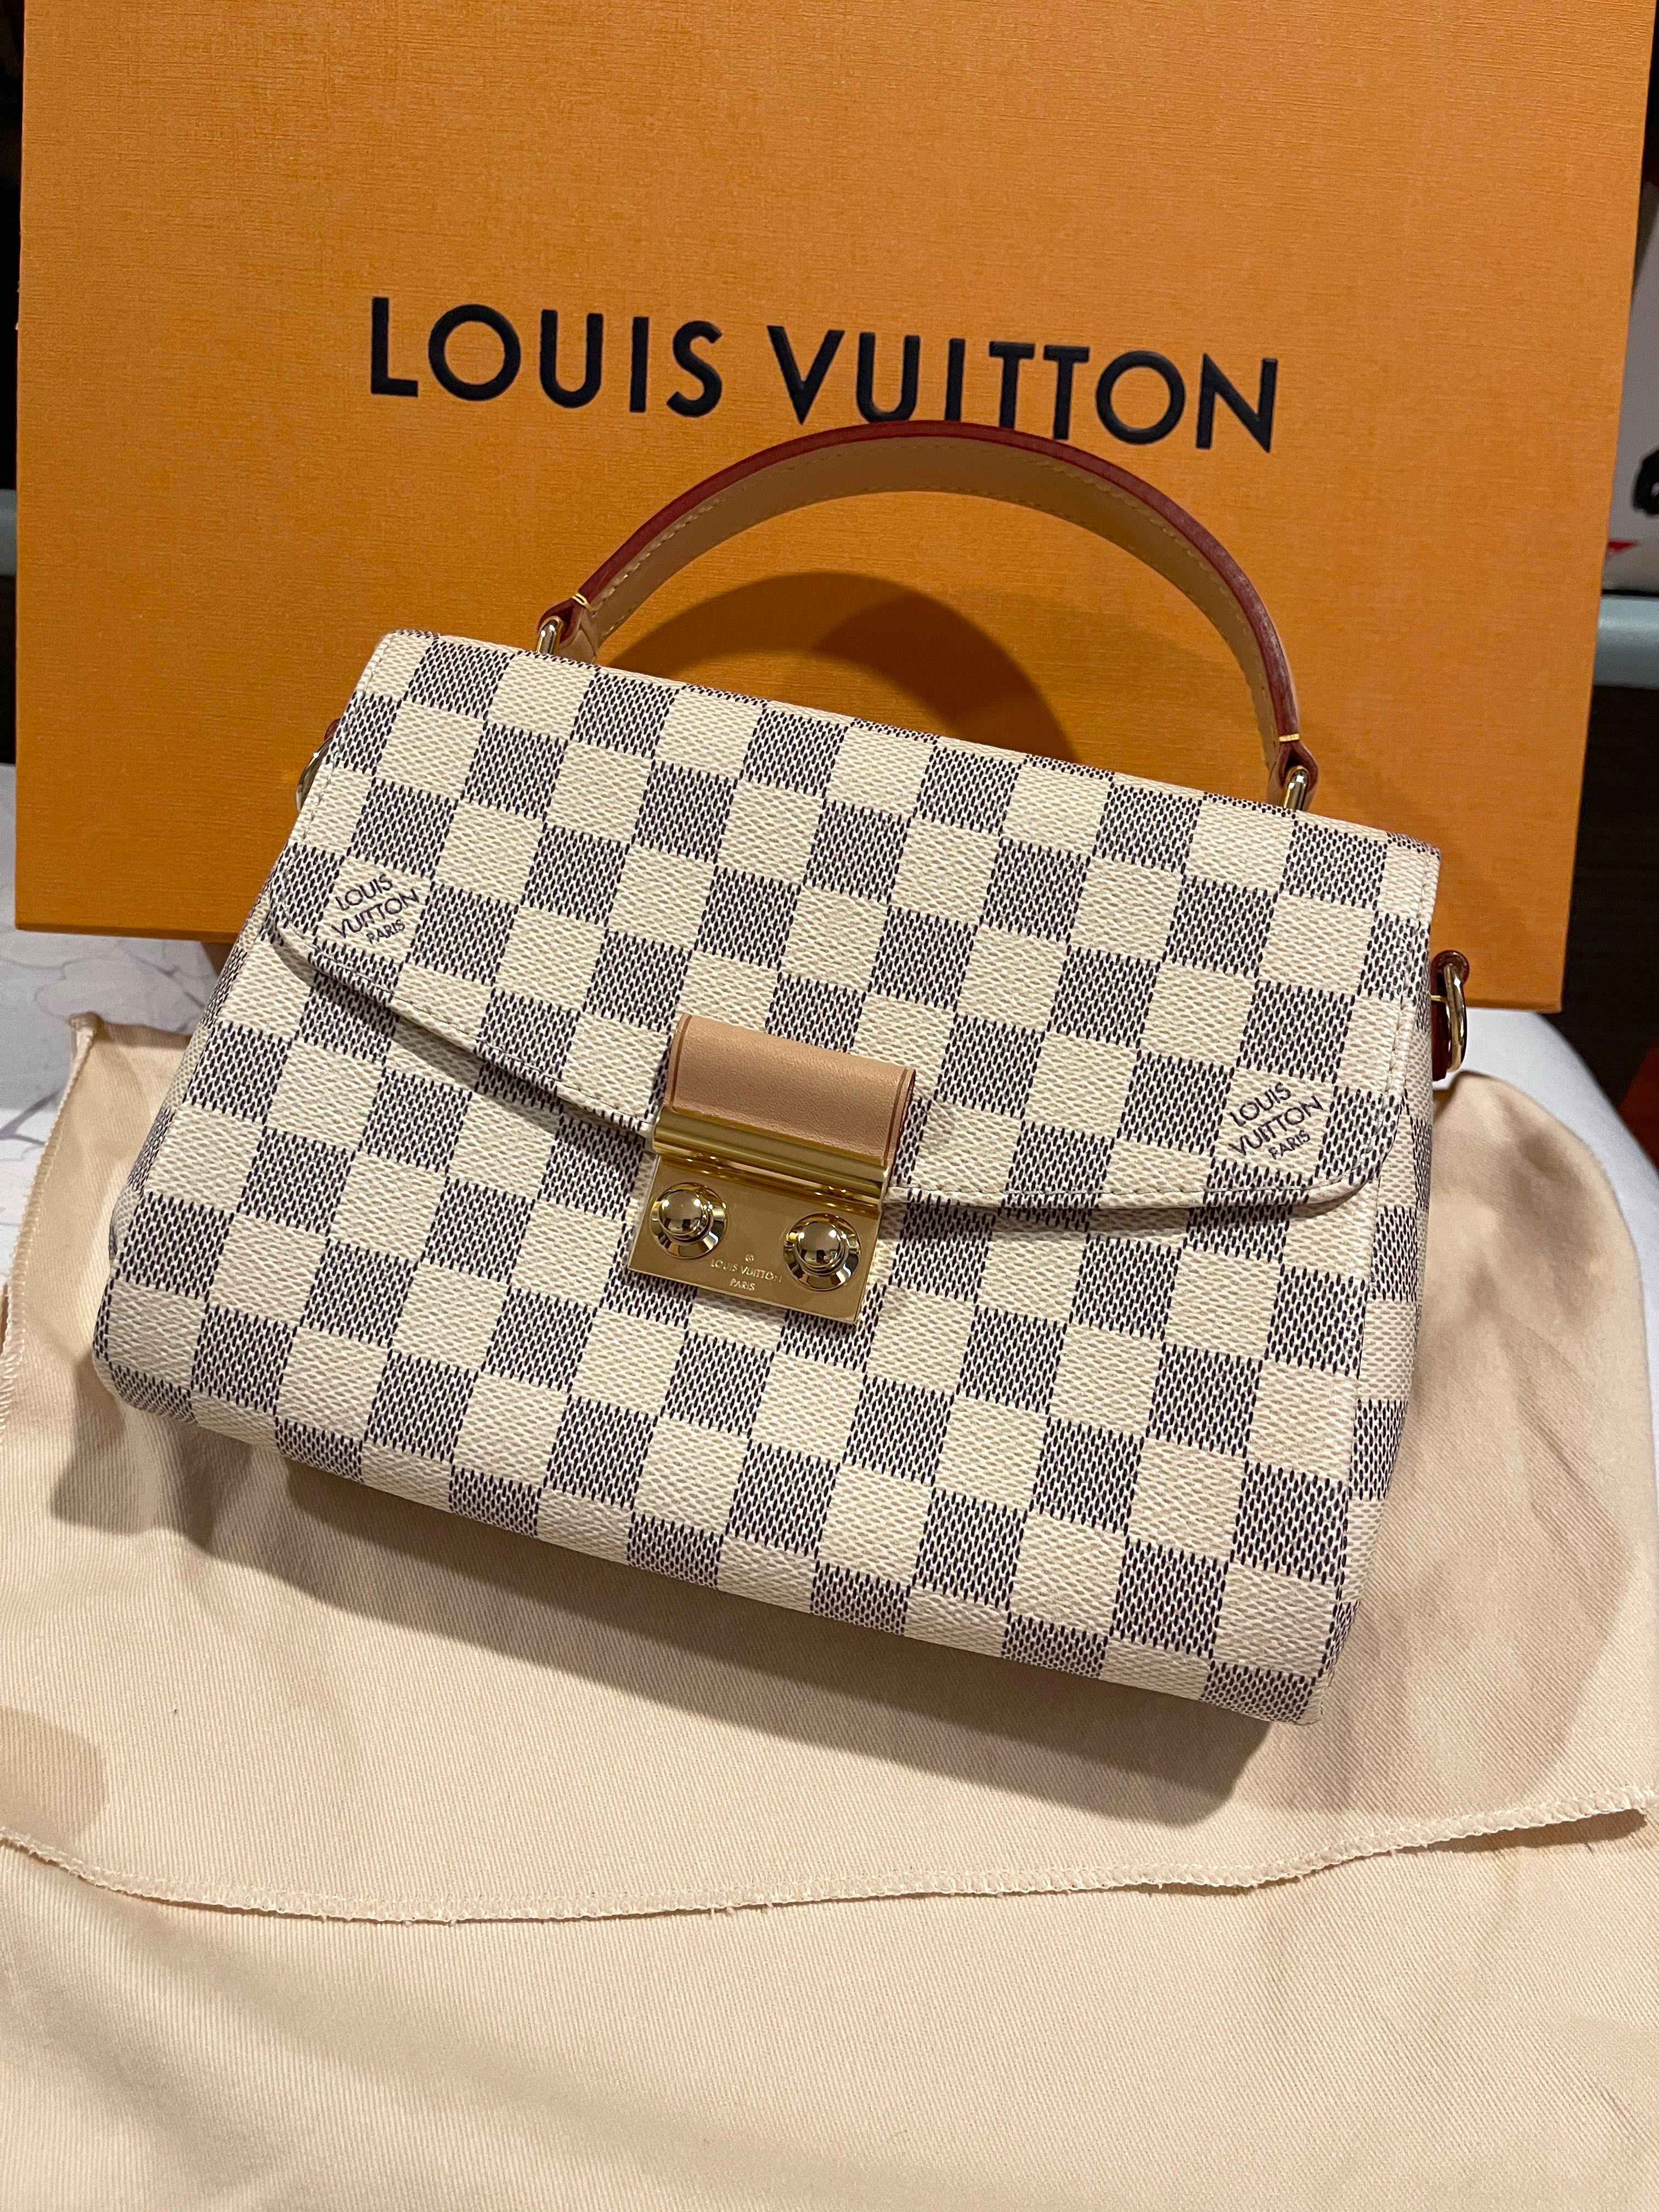 Louis Vuitton price increase 2022/unboxing Louis Vuitton Croisette